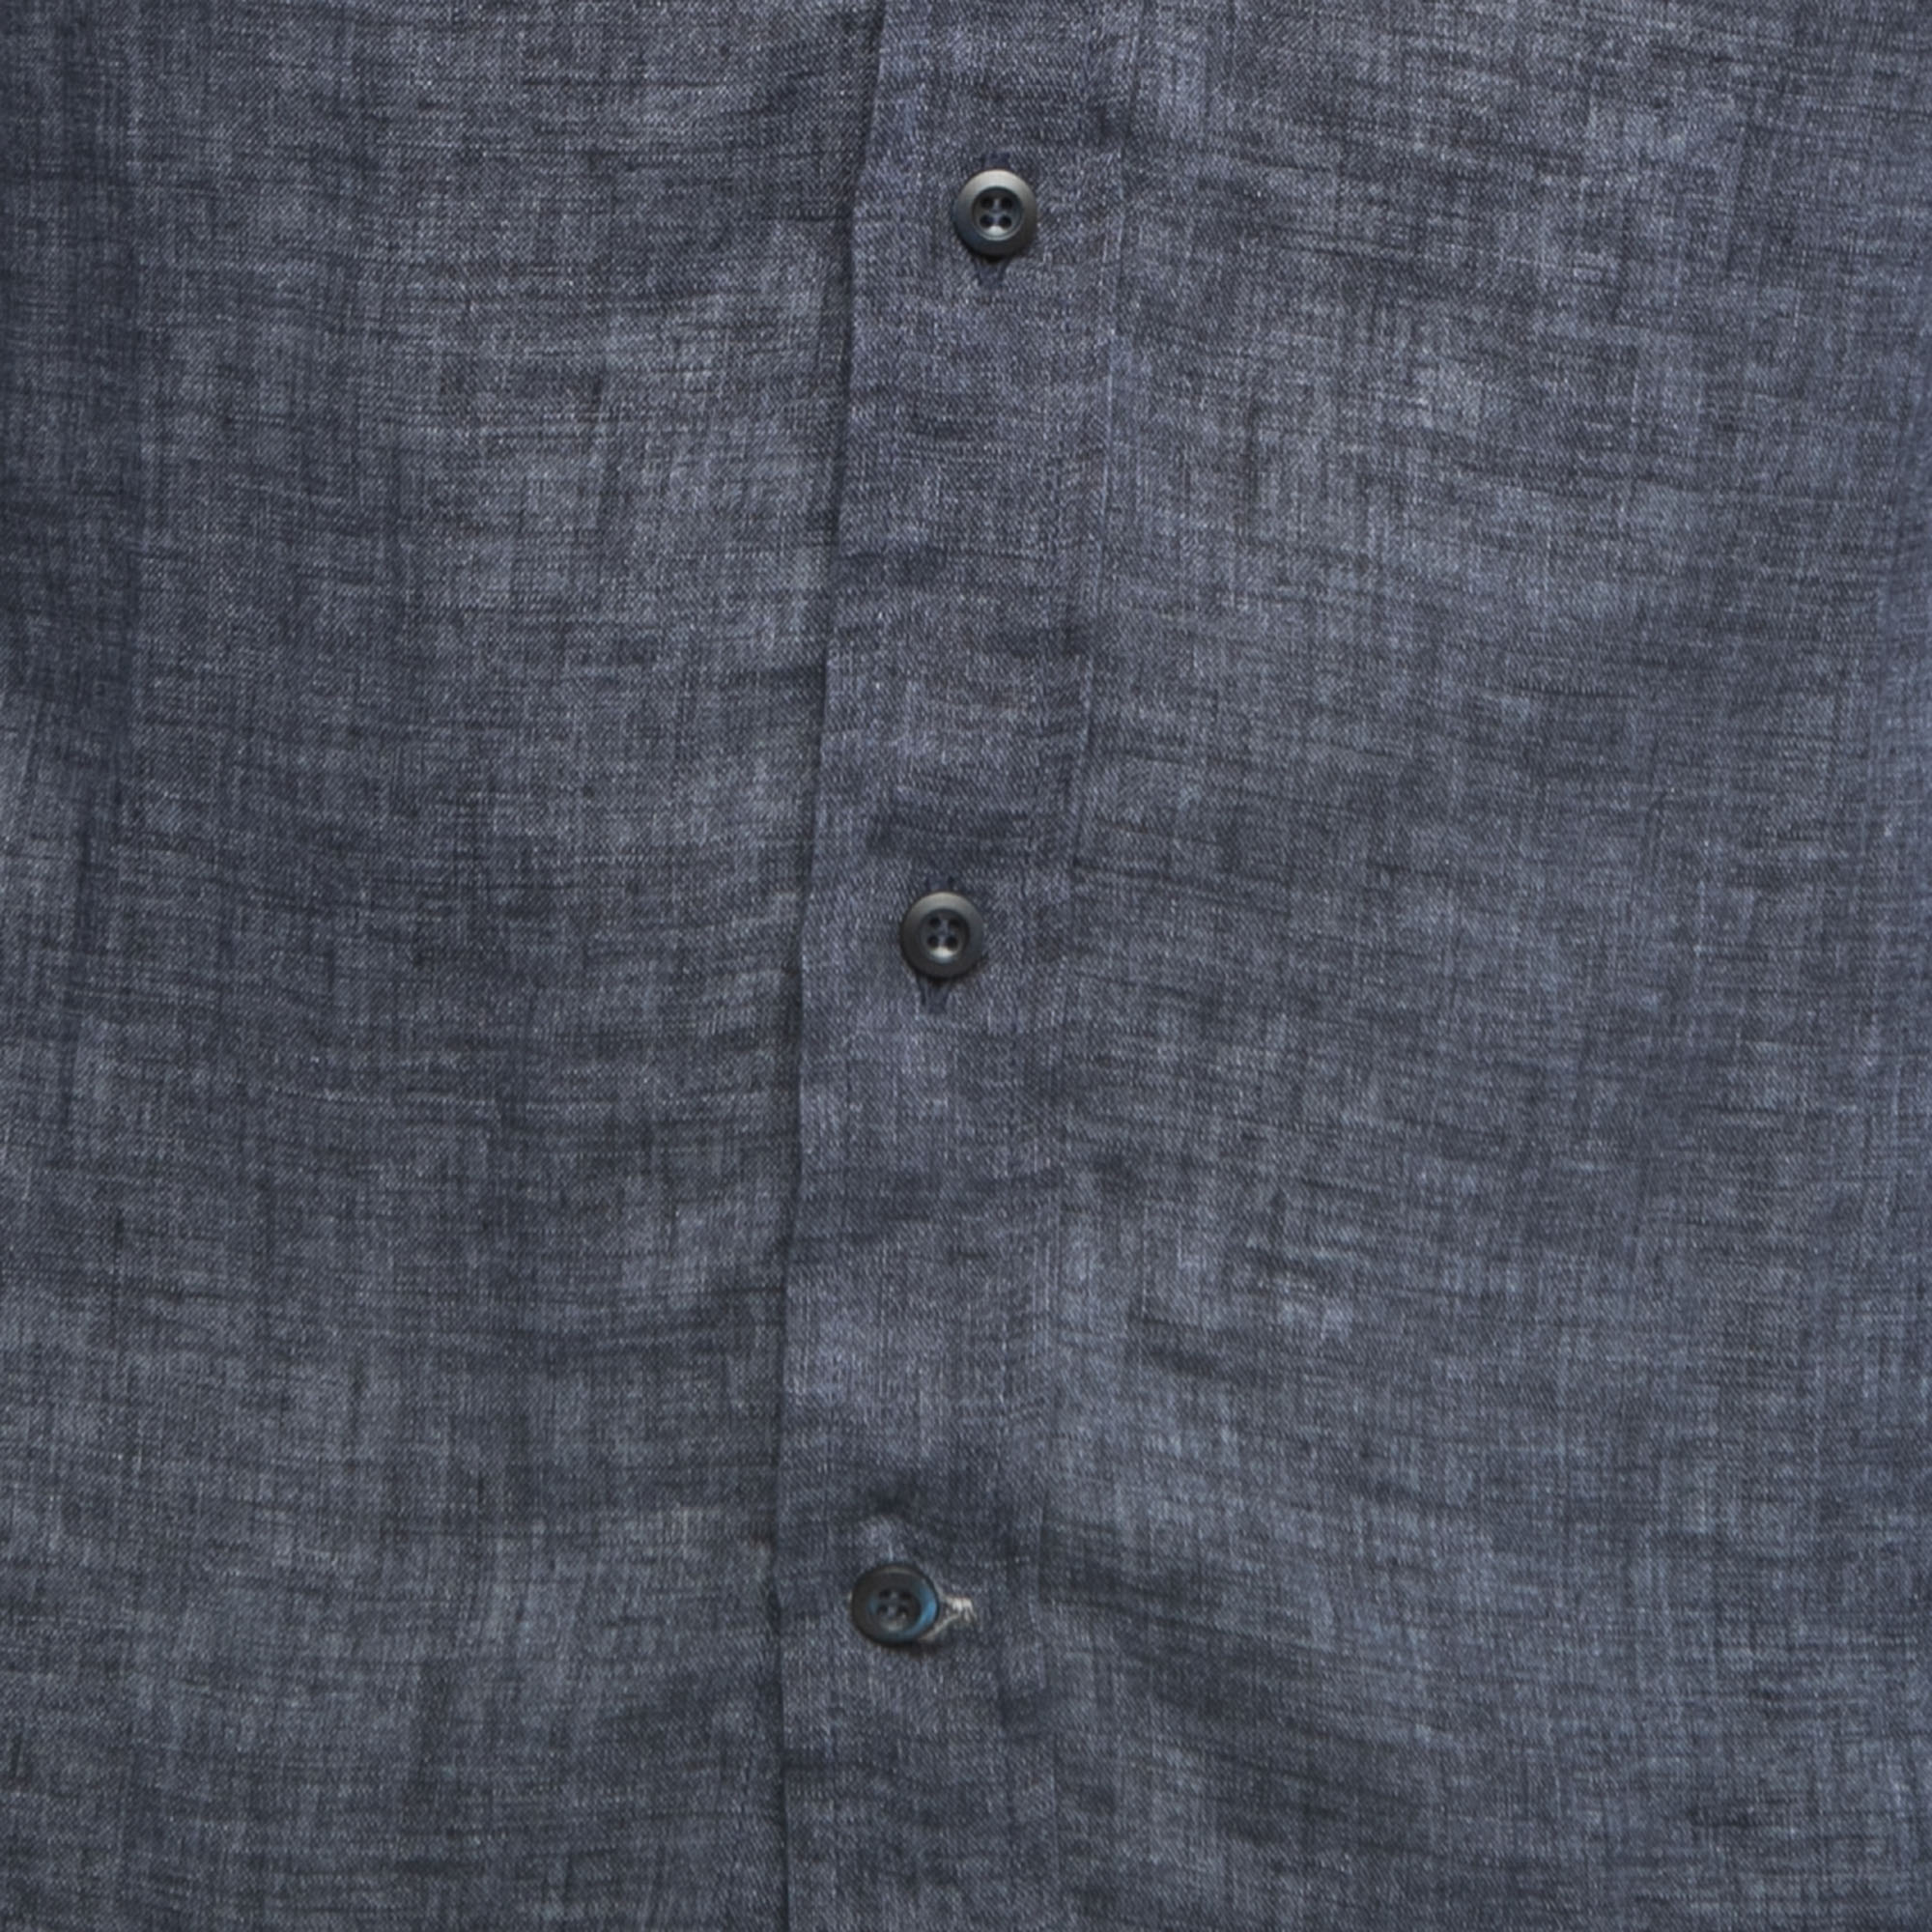 Brunello Cucinelli Dark Blue Linen Button Front Full Sleeve Shirt XS